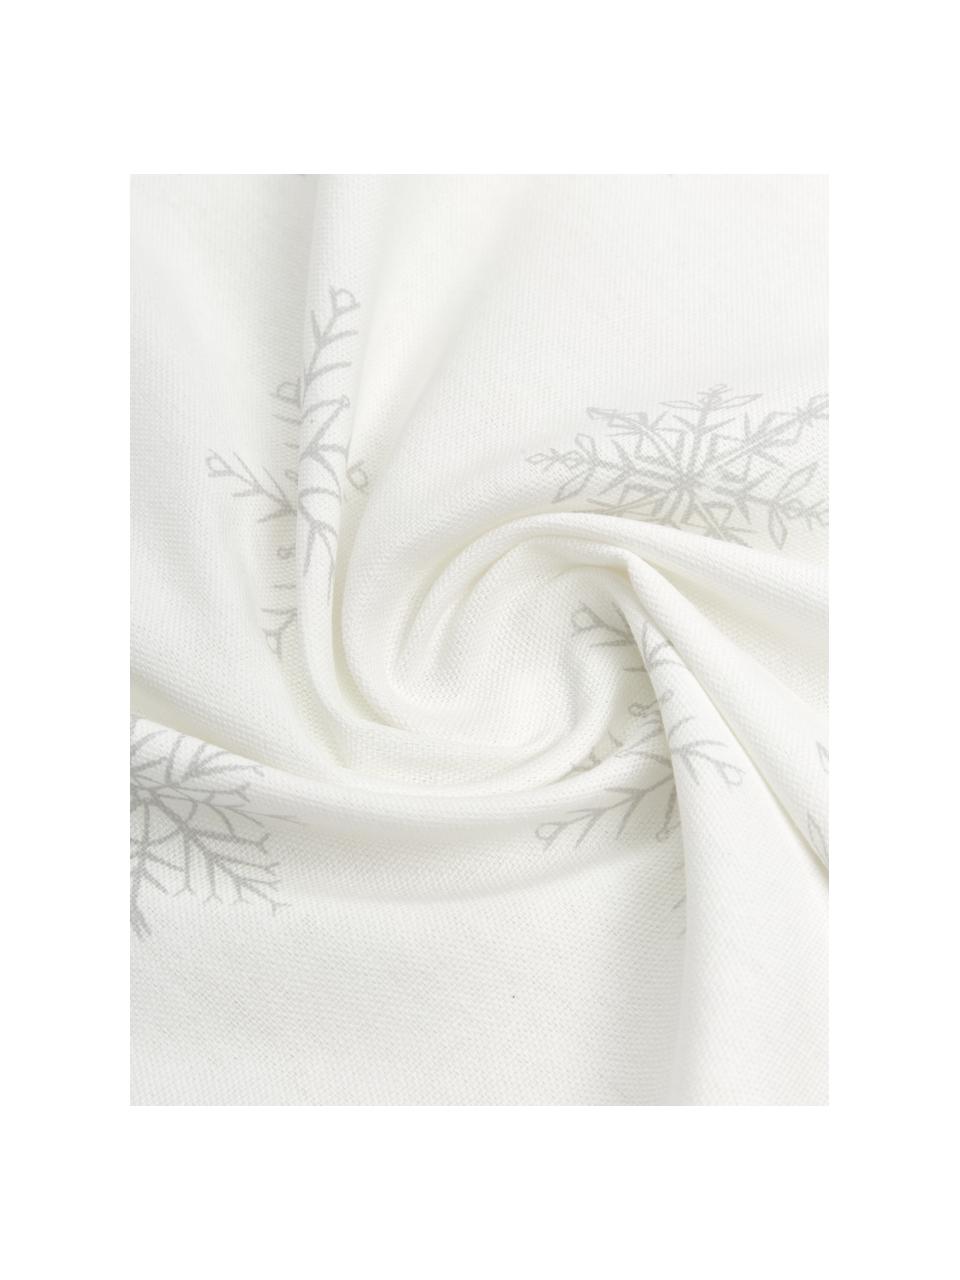 Tischdecke Snow, 100% Baumwolle, aus nachhaltigem Baumwollanbau, Weiß, Creme, B 145 x L 200 cm